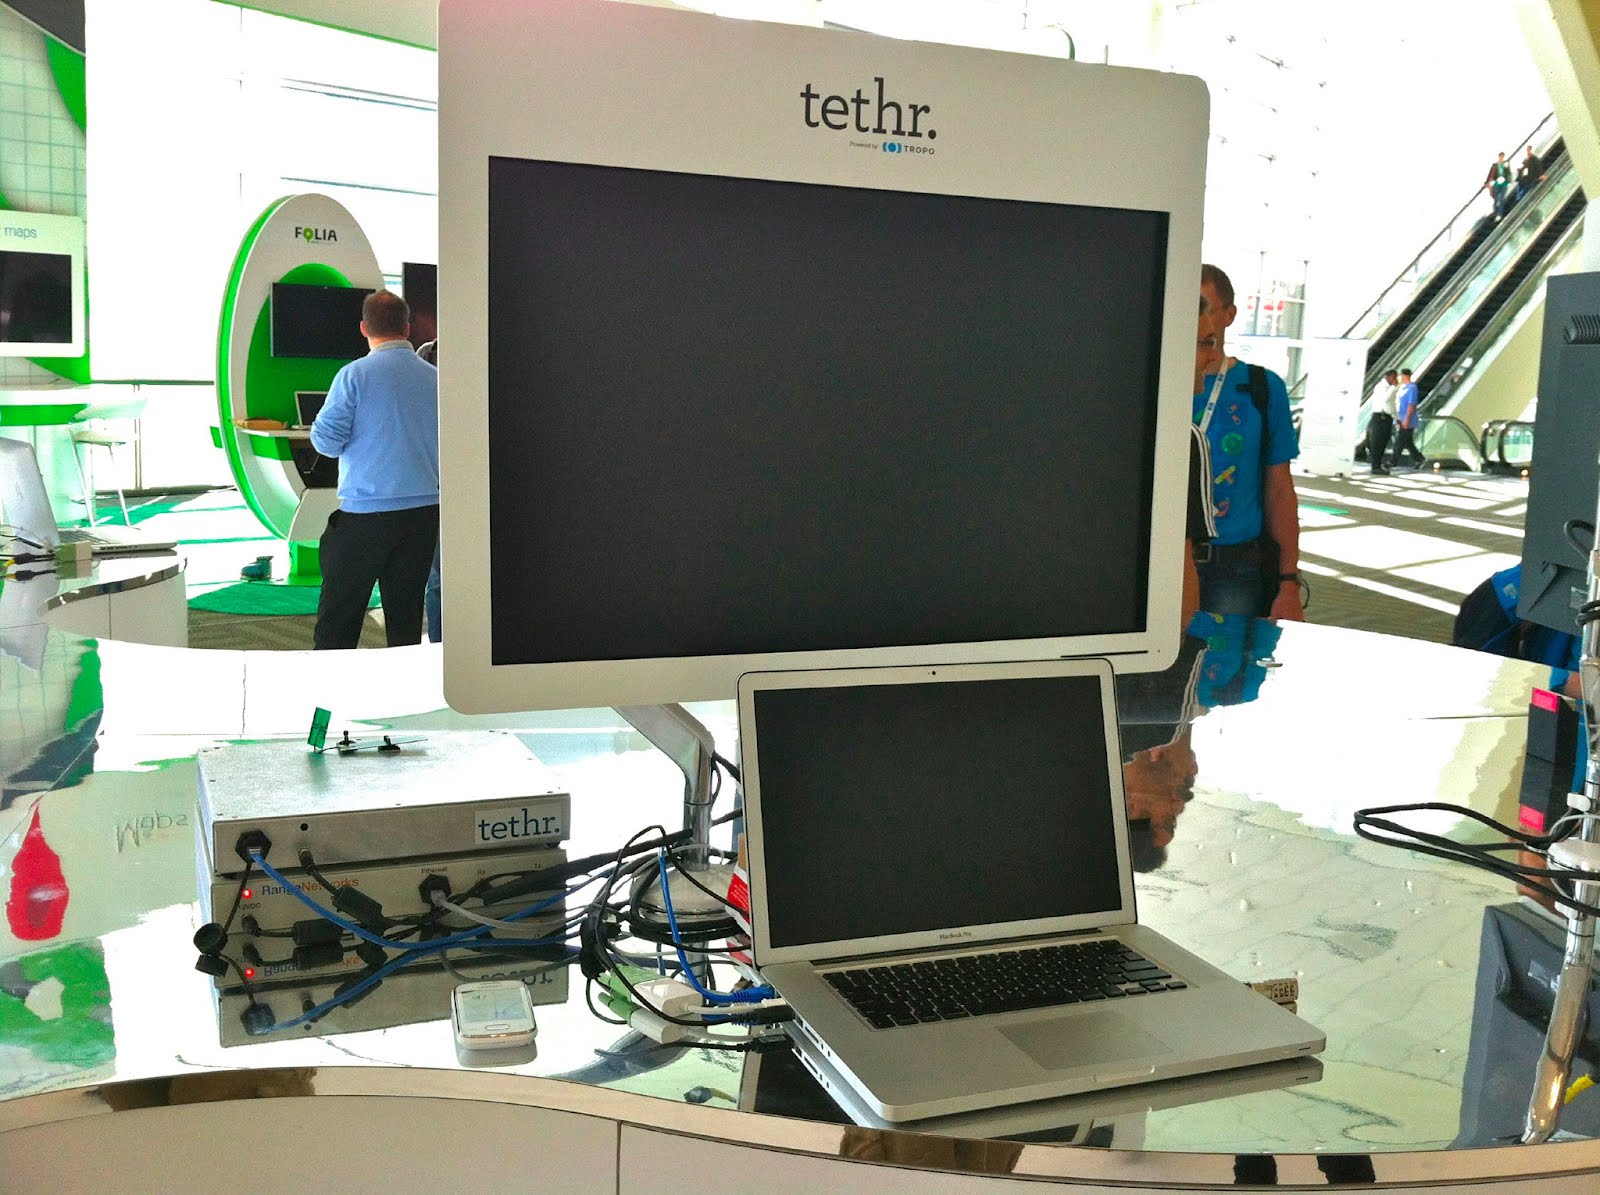 Tethr in action at Google I/O 2012